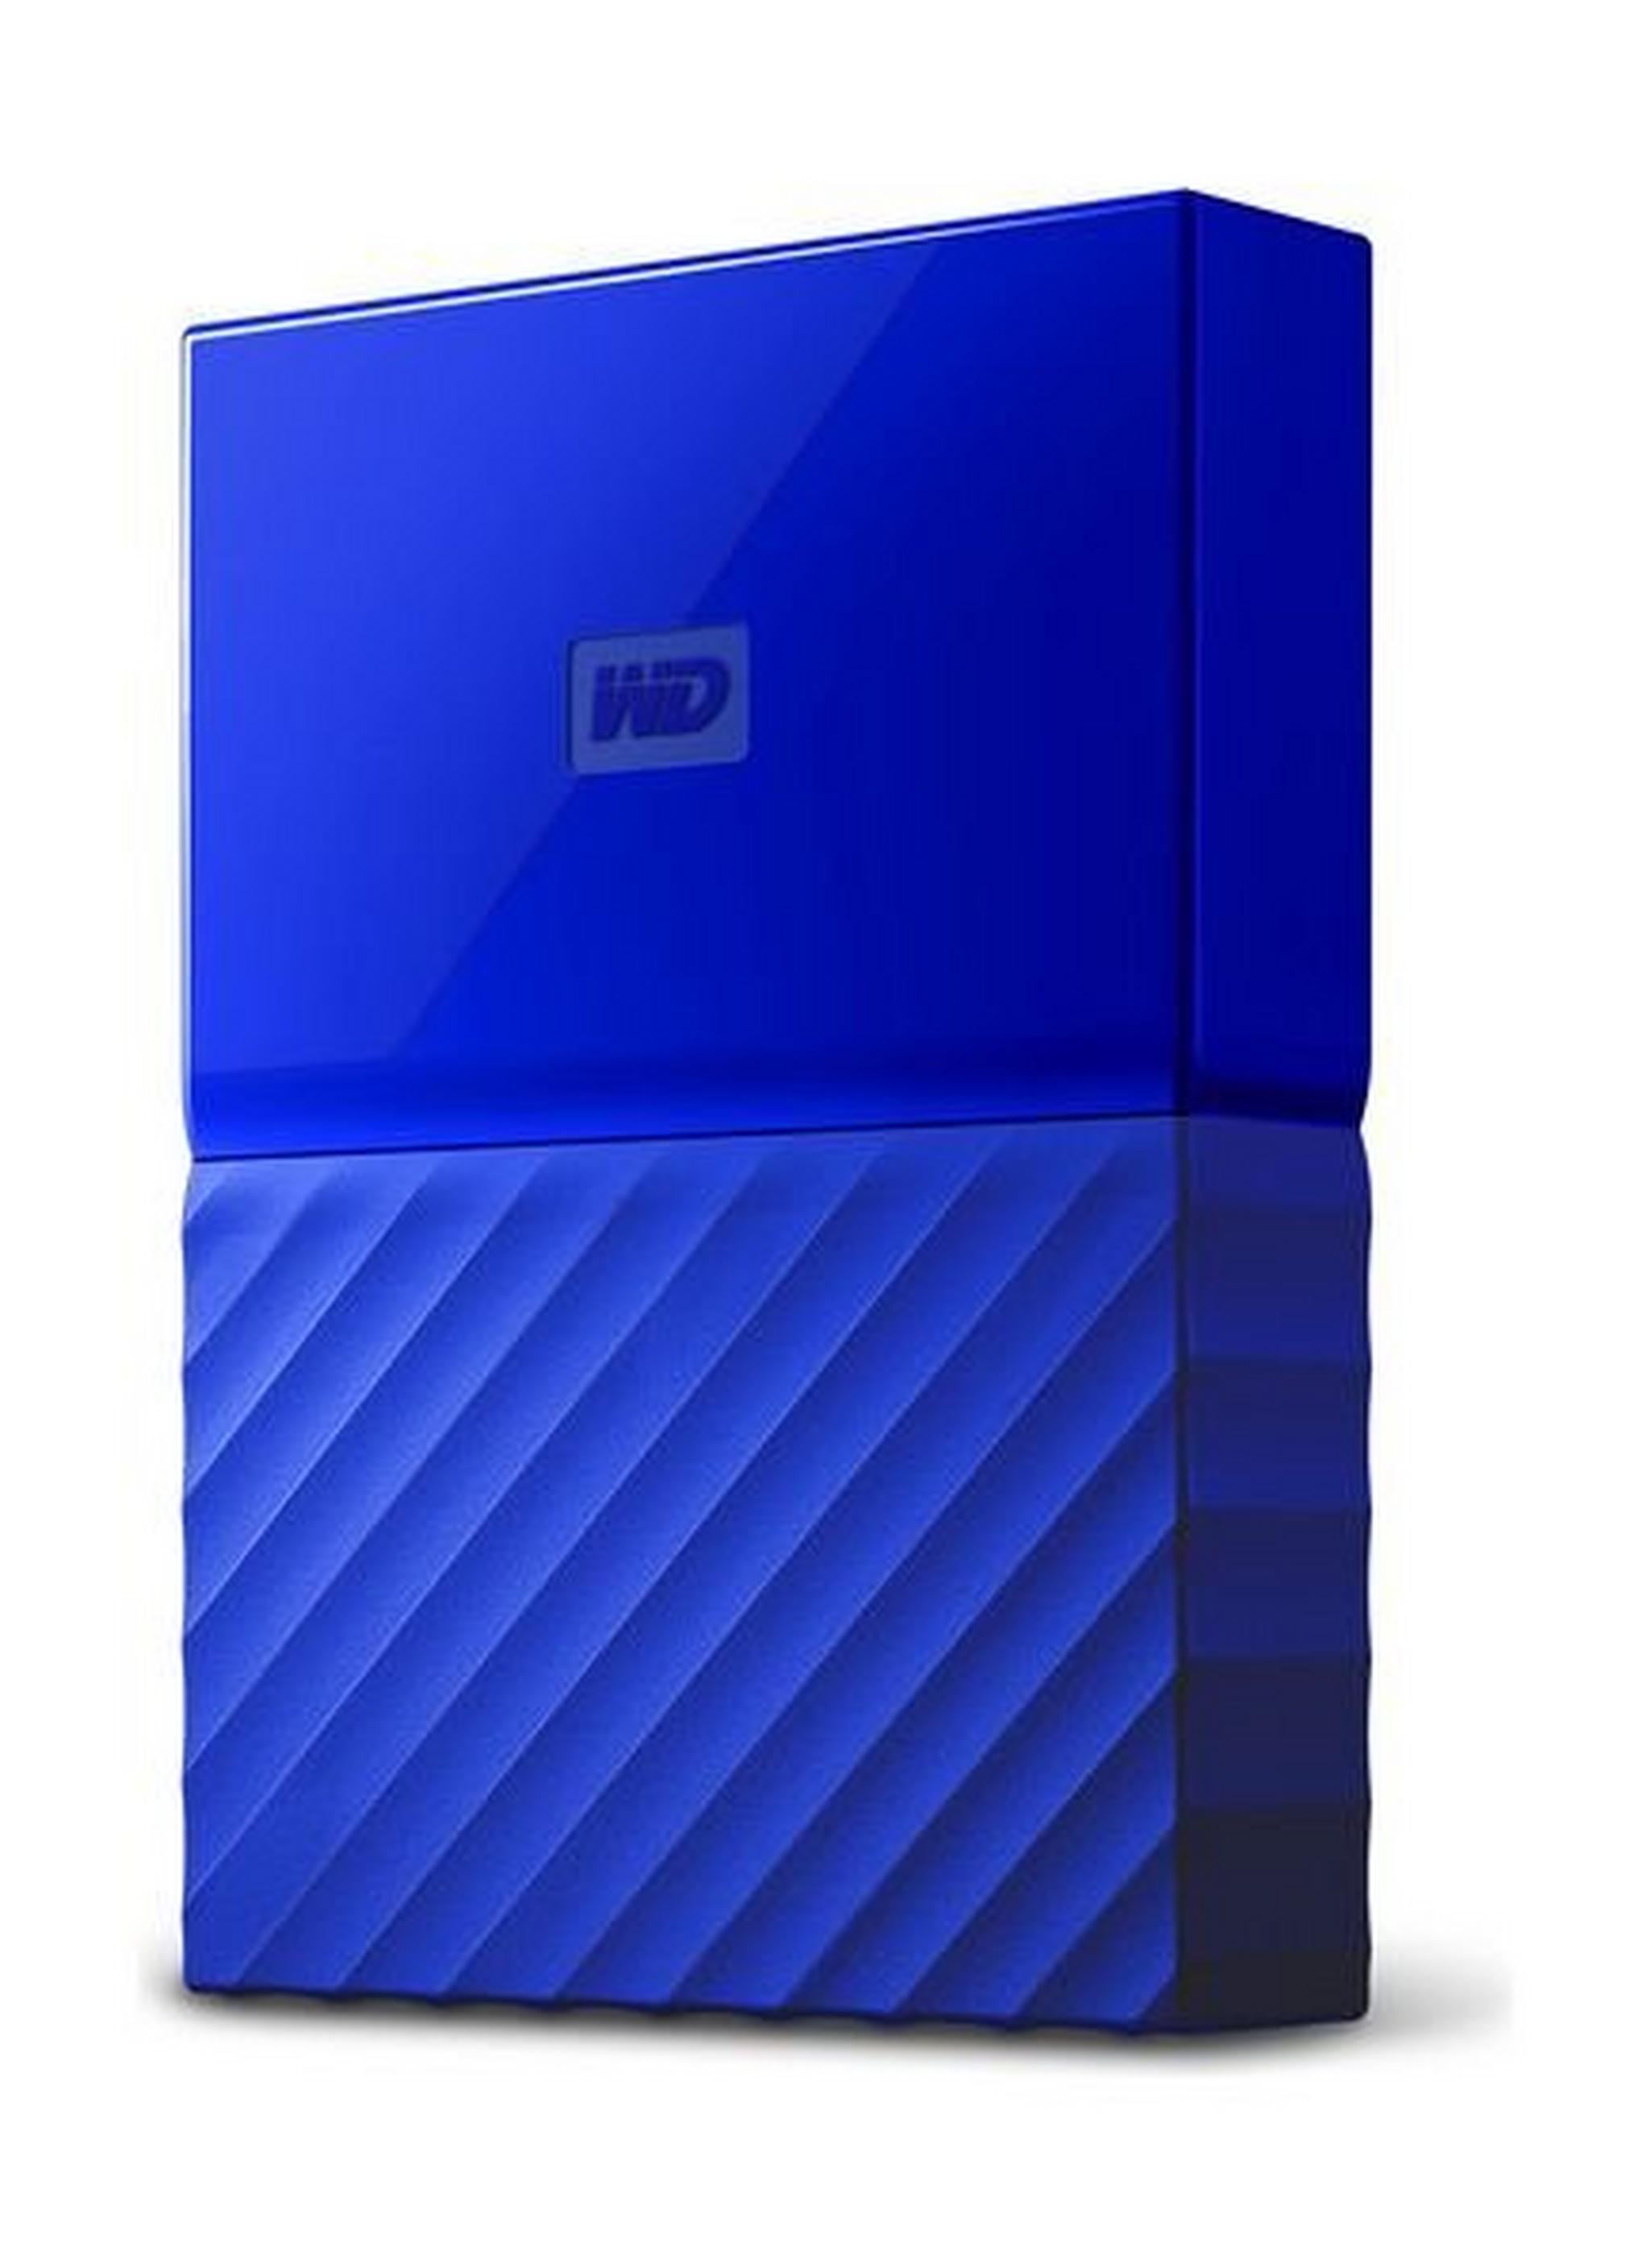 WD 2TB My Passport USB 3.0 External Hard Drive - Blue